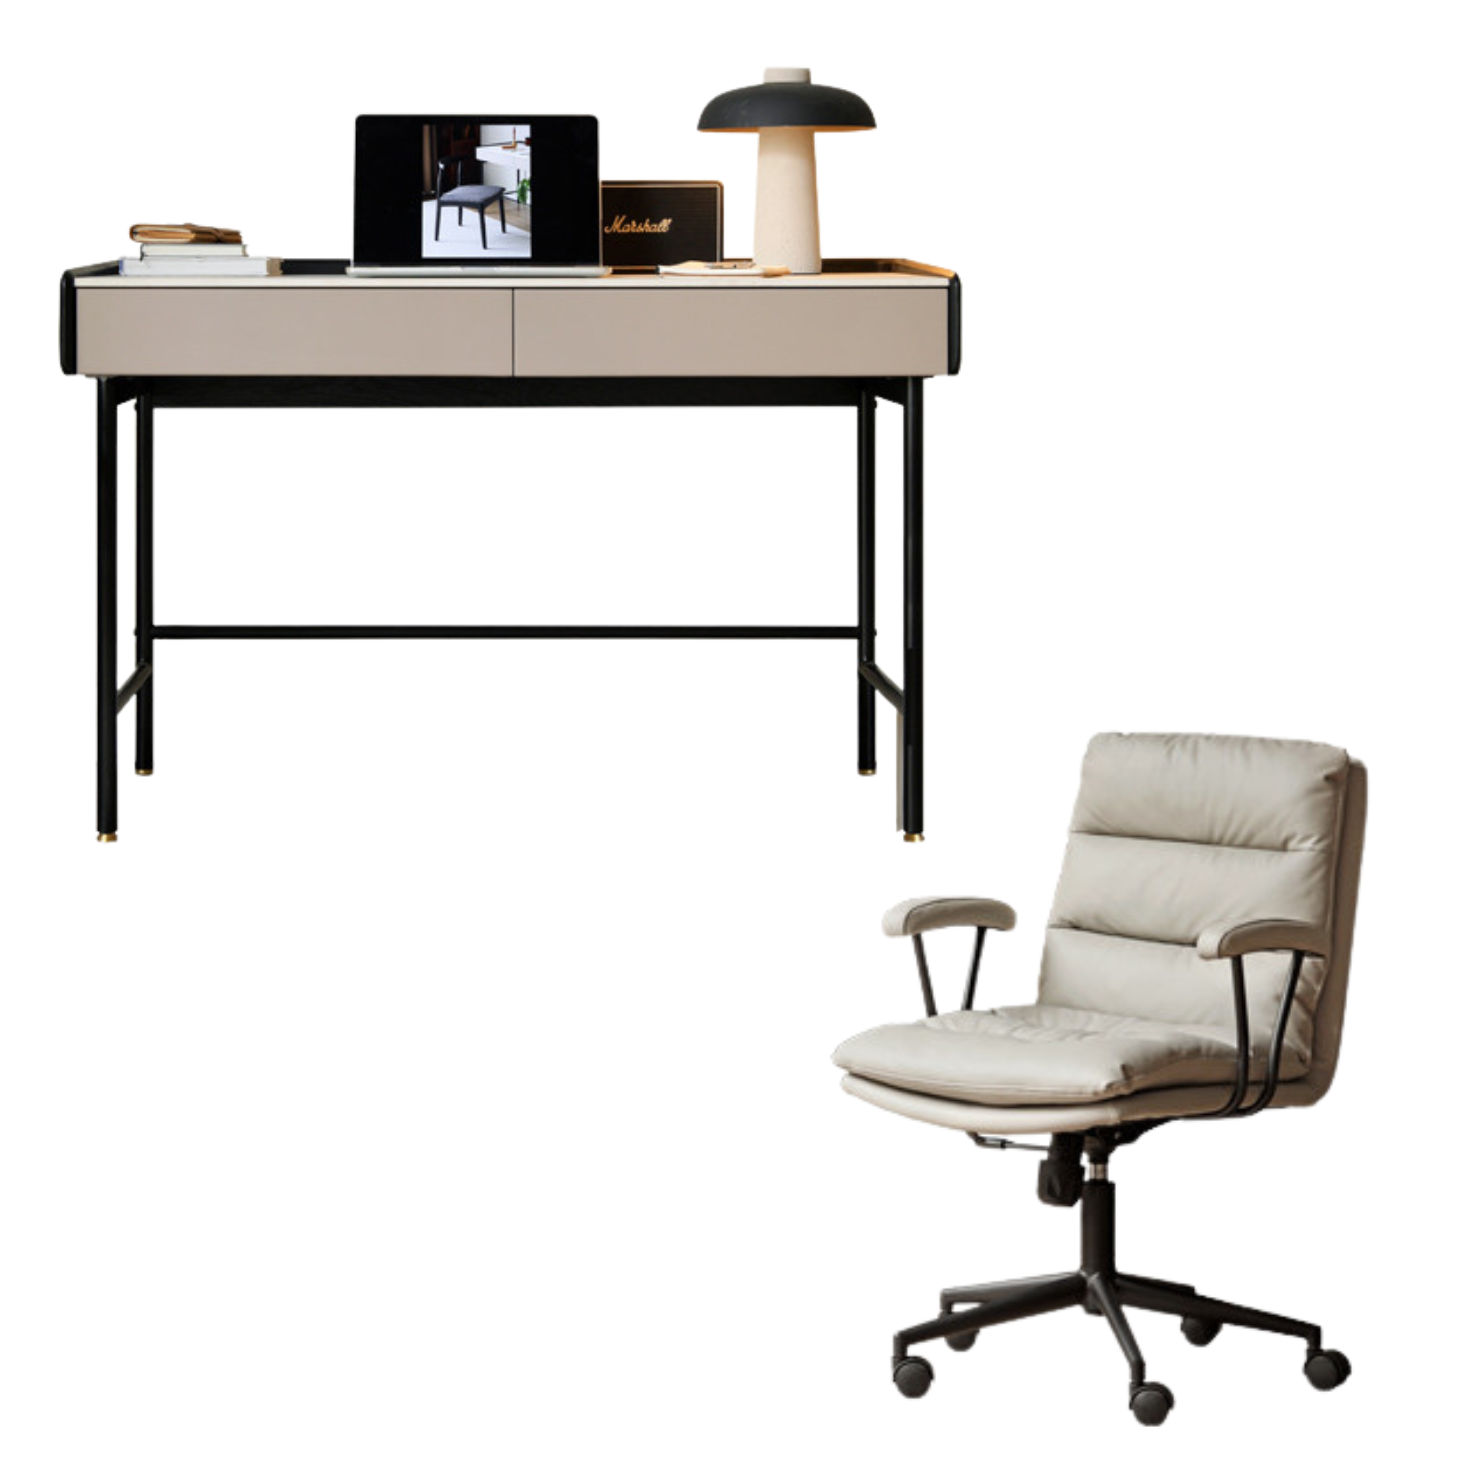 Oak solid wood Office desk, dressing table slate top: